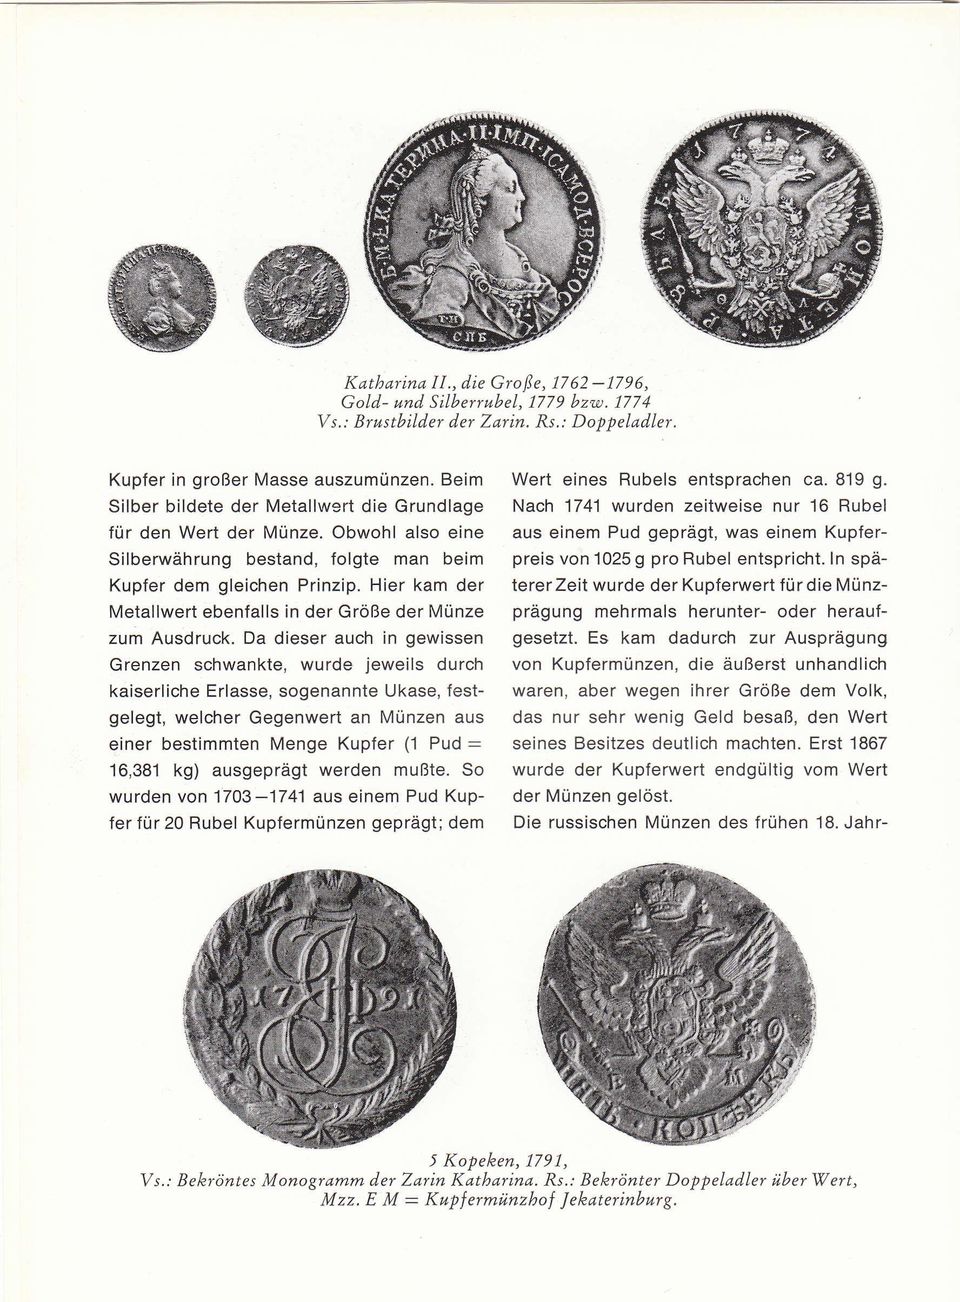 Hier kam der Metallwert ebenfalls in der Größe der Münze zum Ausdruck.